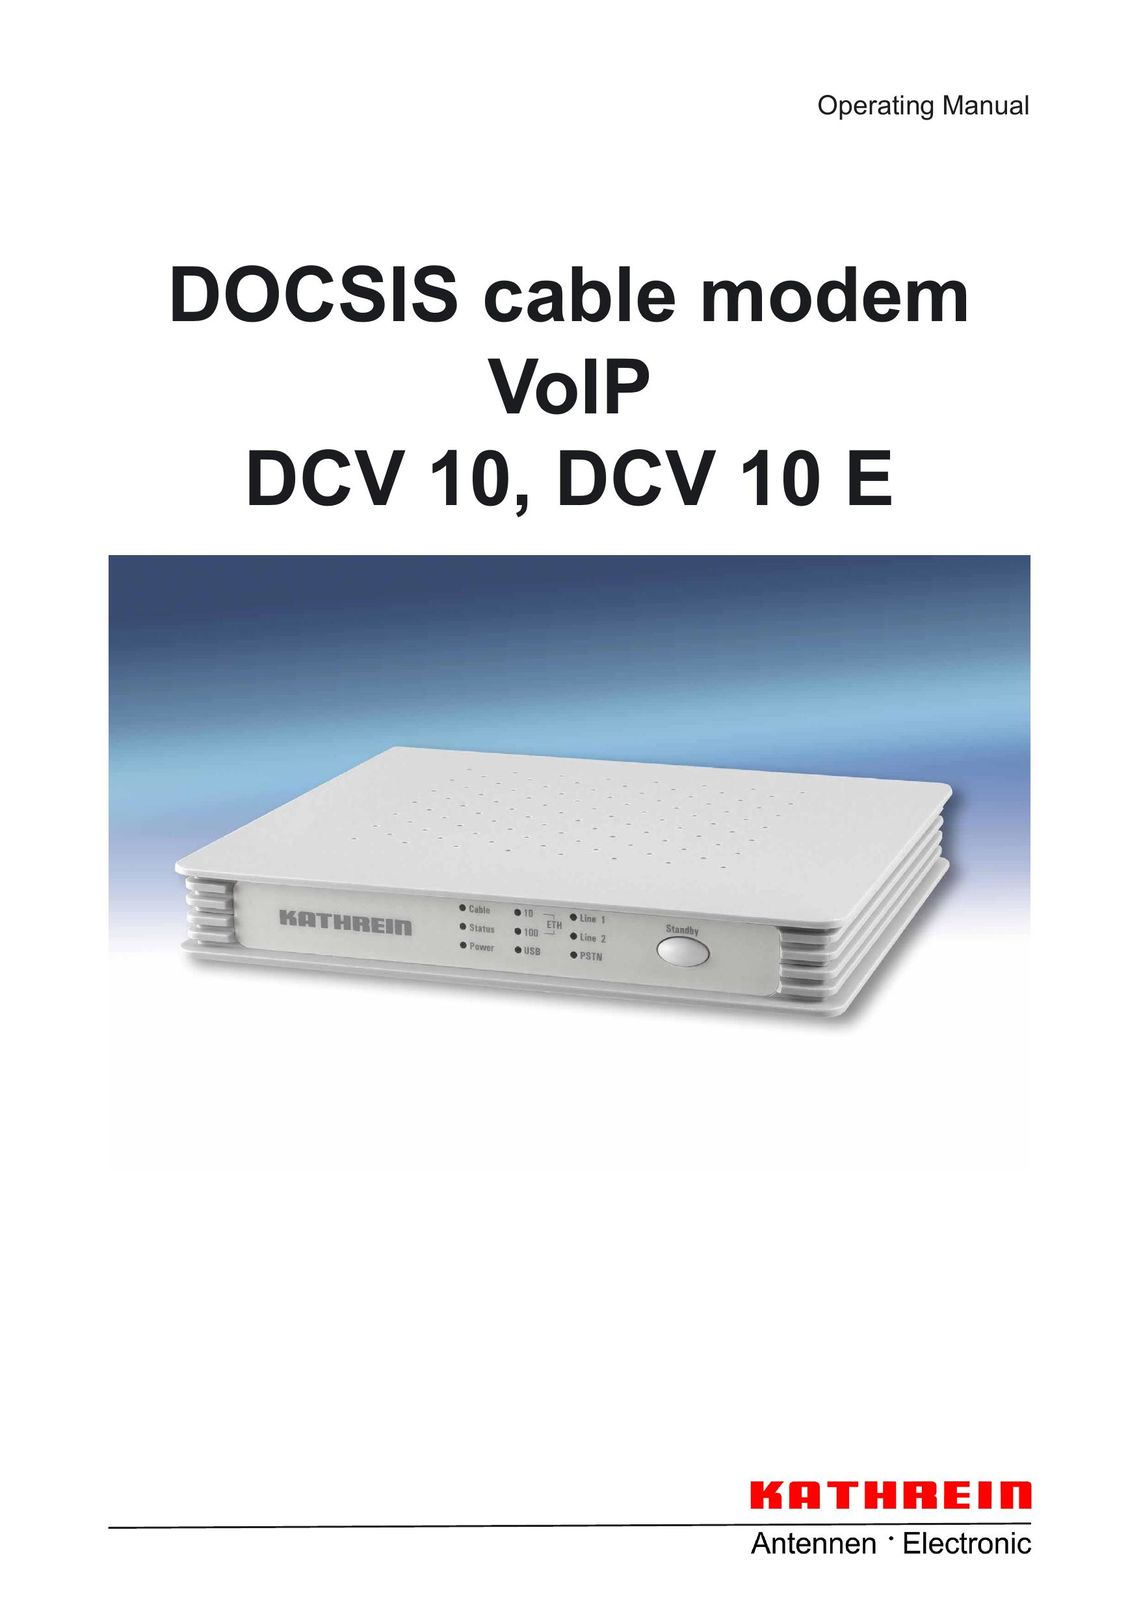 Kathrein DCV 10 Modem User Manual